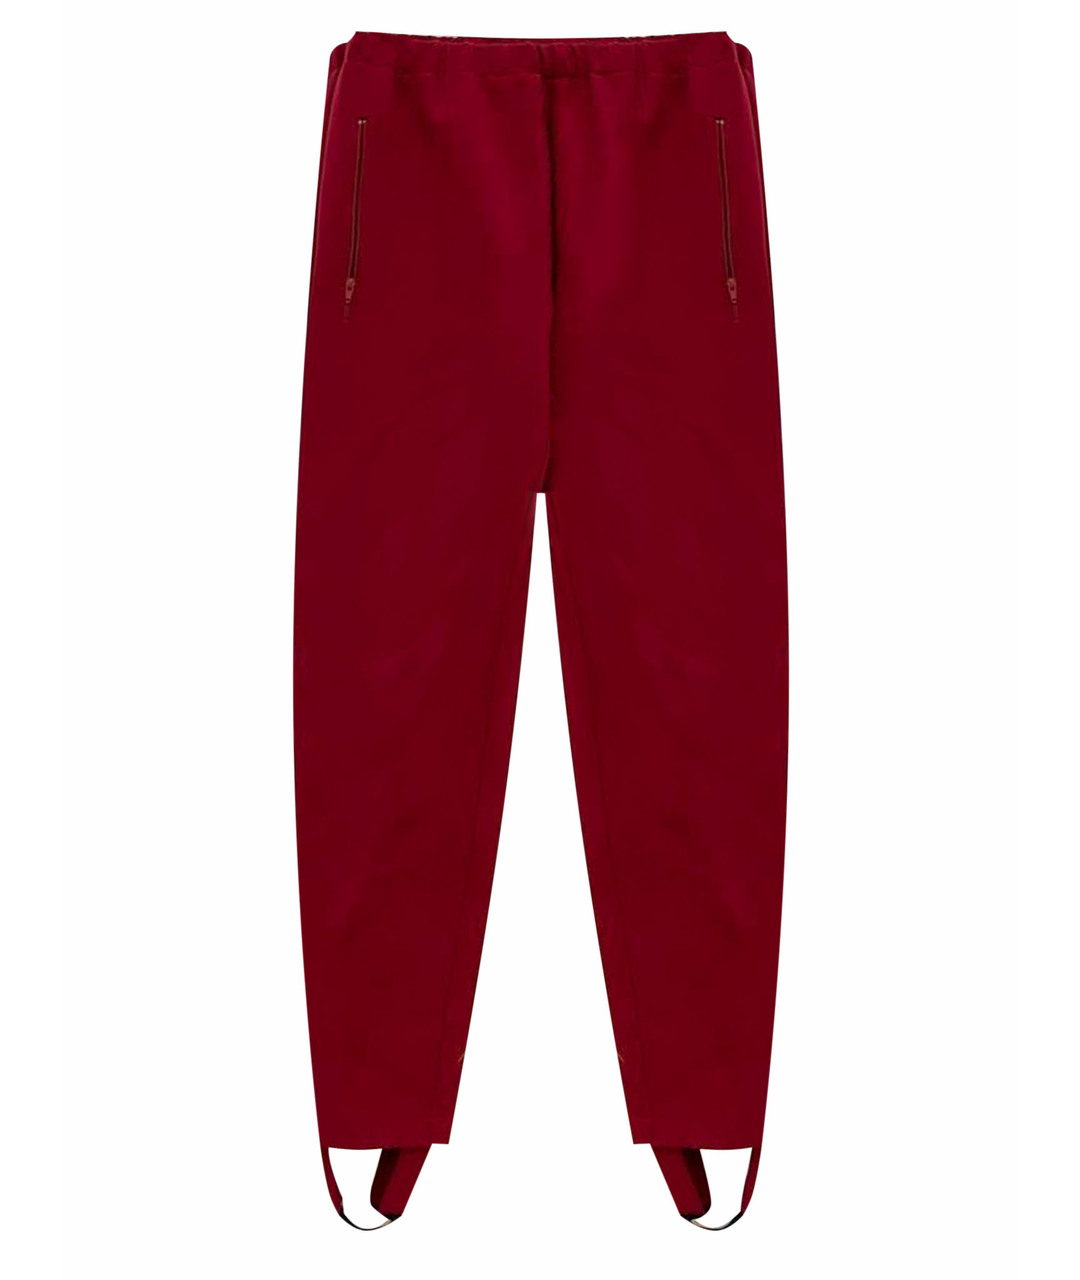 TAMUNA INGOROKVA Красные вискозные брюки узкие, фото 1